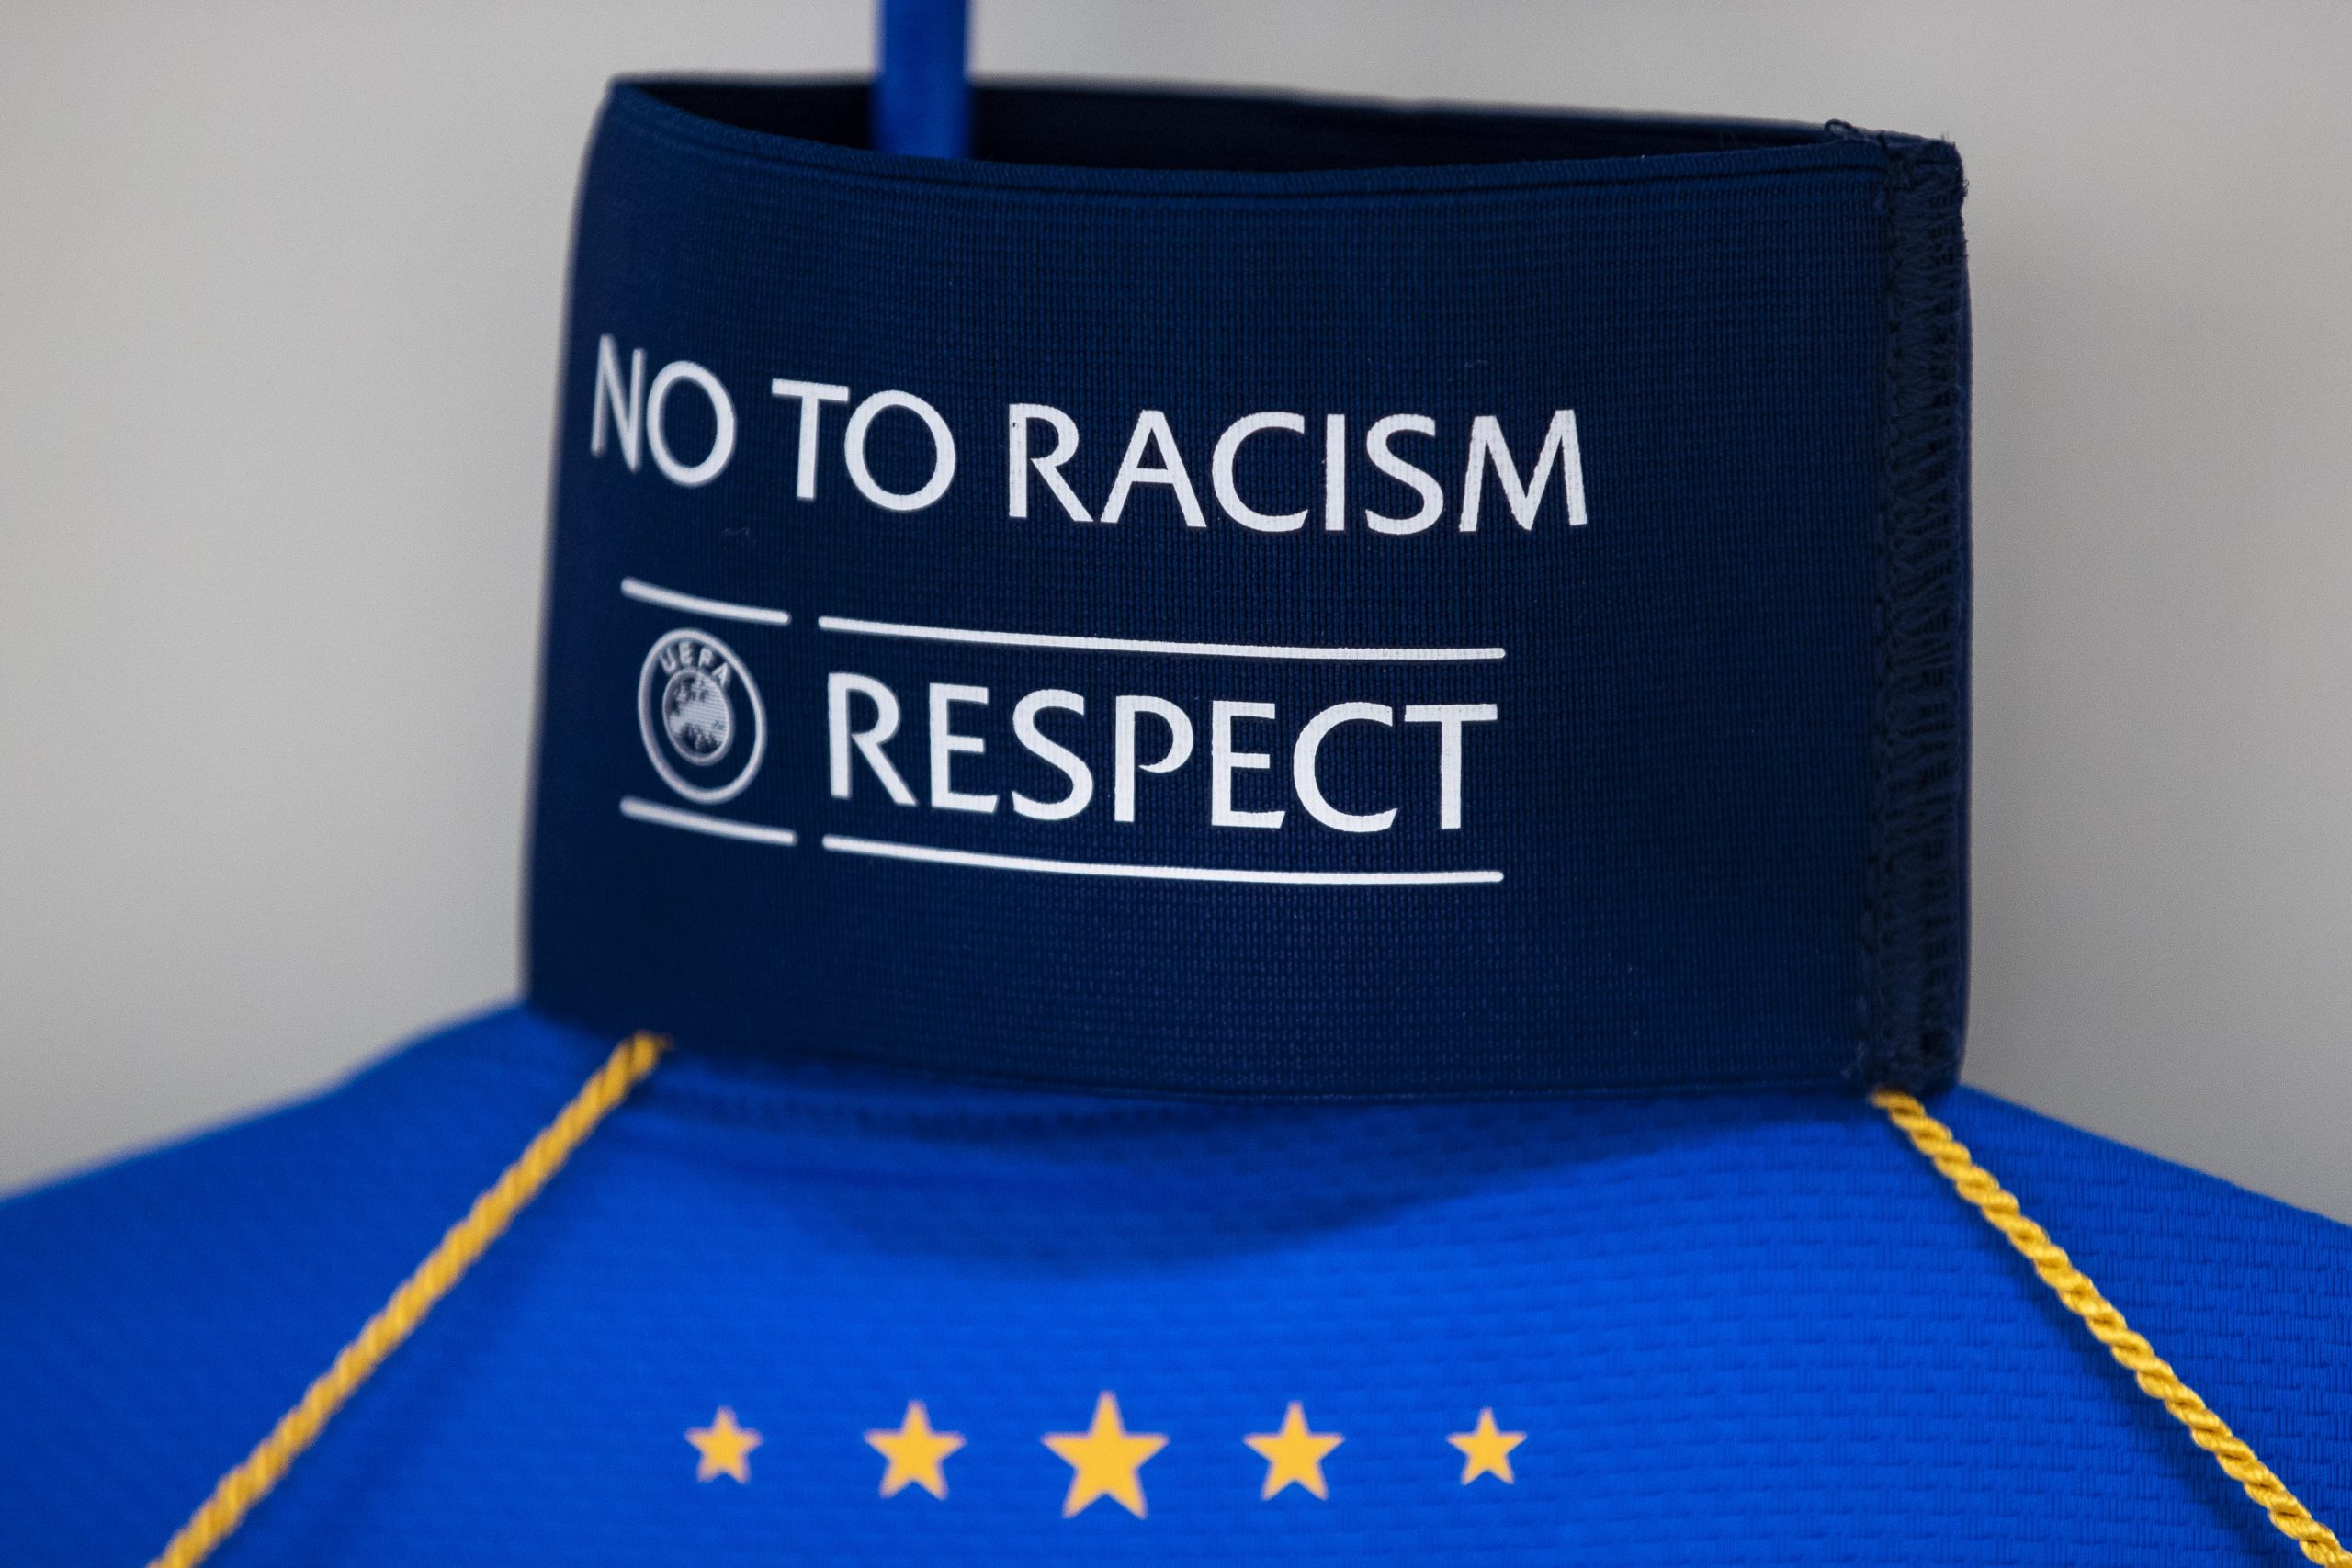 “Club Brugge” fani par rasismu varēs ziņot no stadiona